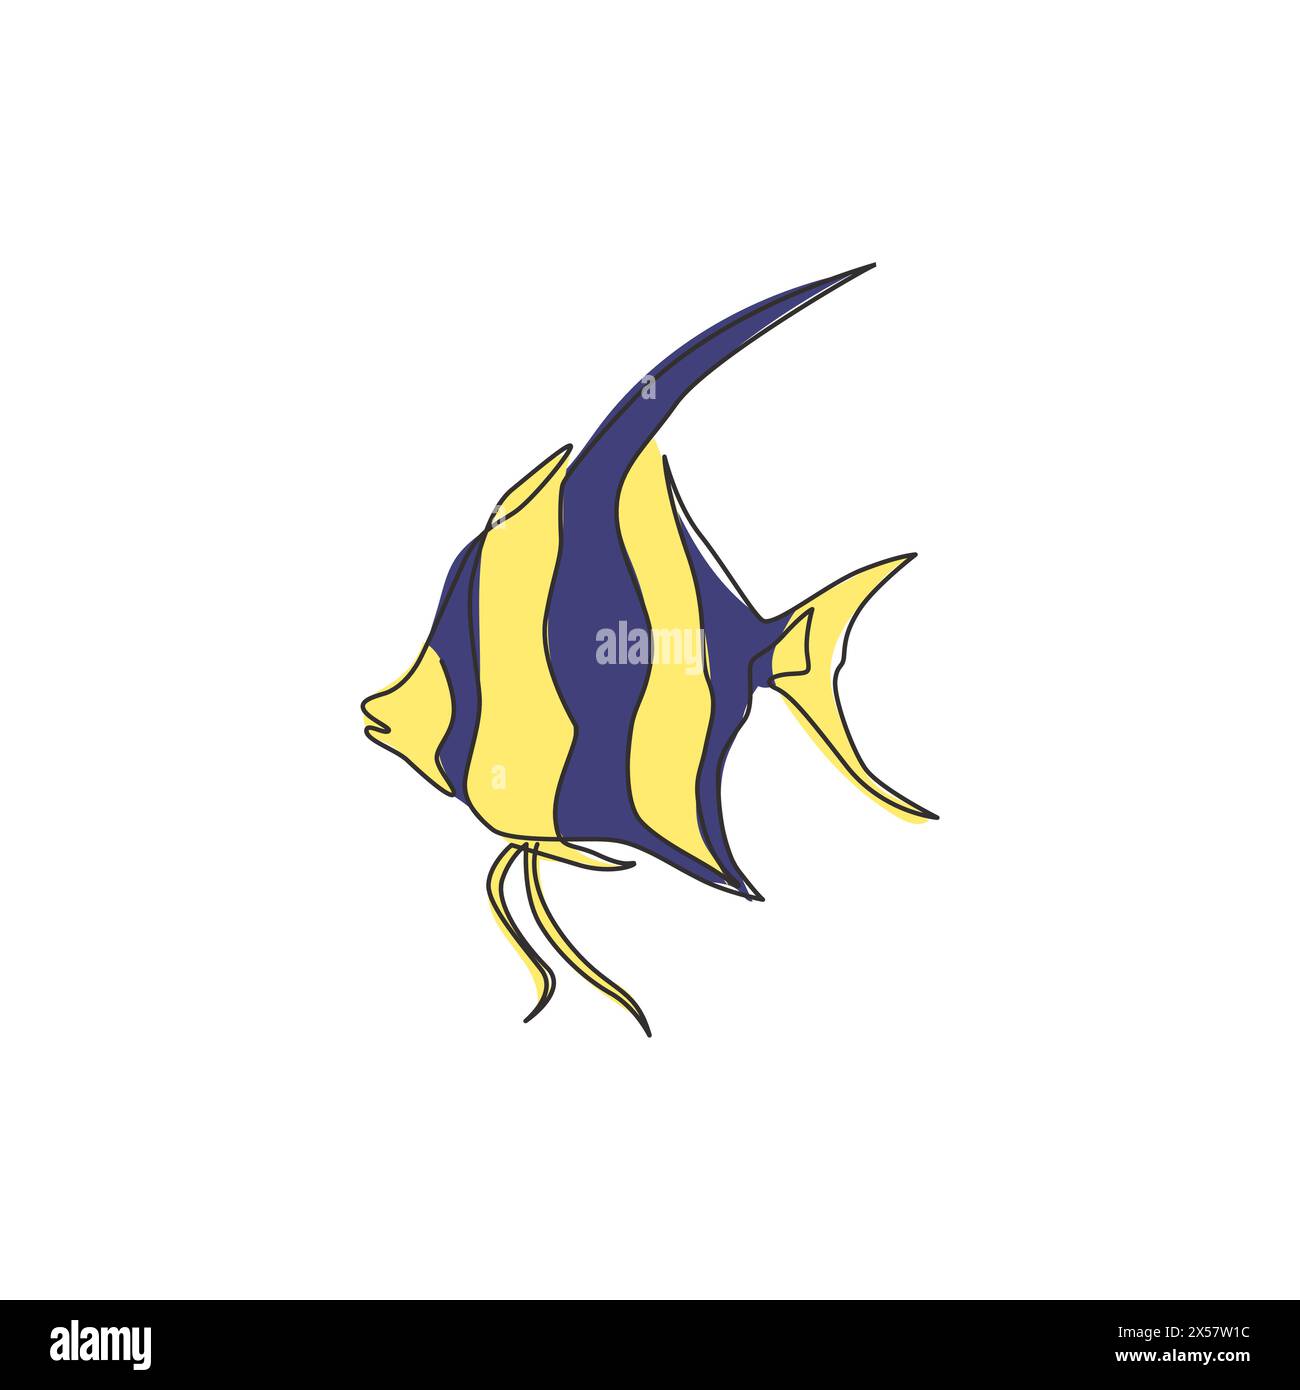 Dessin de ligne continue unique d'adorable angelfish d'eau douce pour l'identité du logo de l'entreprise. Concept de mascotte de poisson mignon pterophyllum pour aquarium show ico Illustration de Vecteur